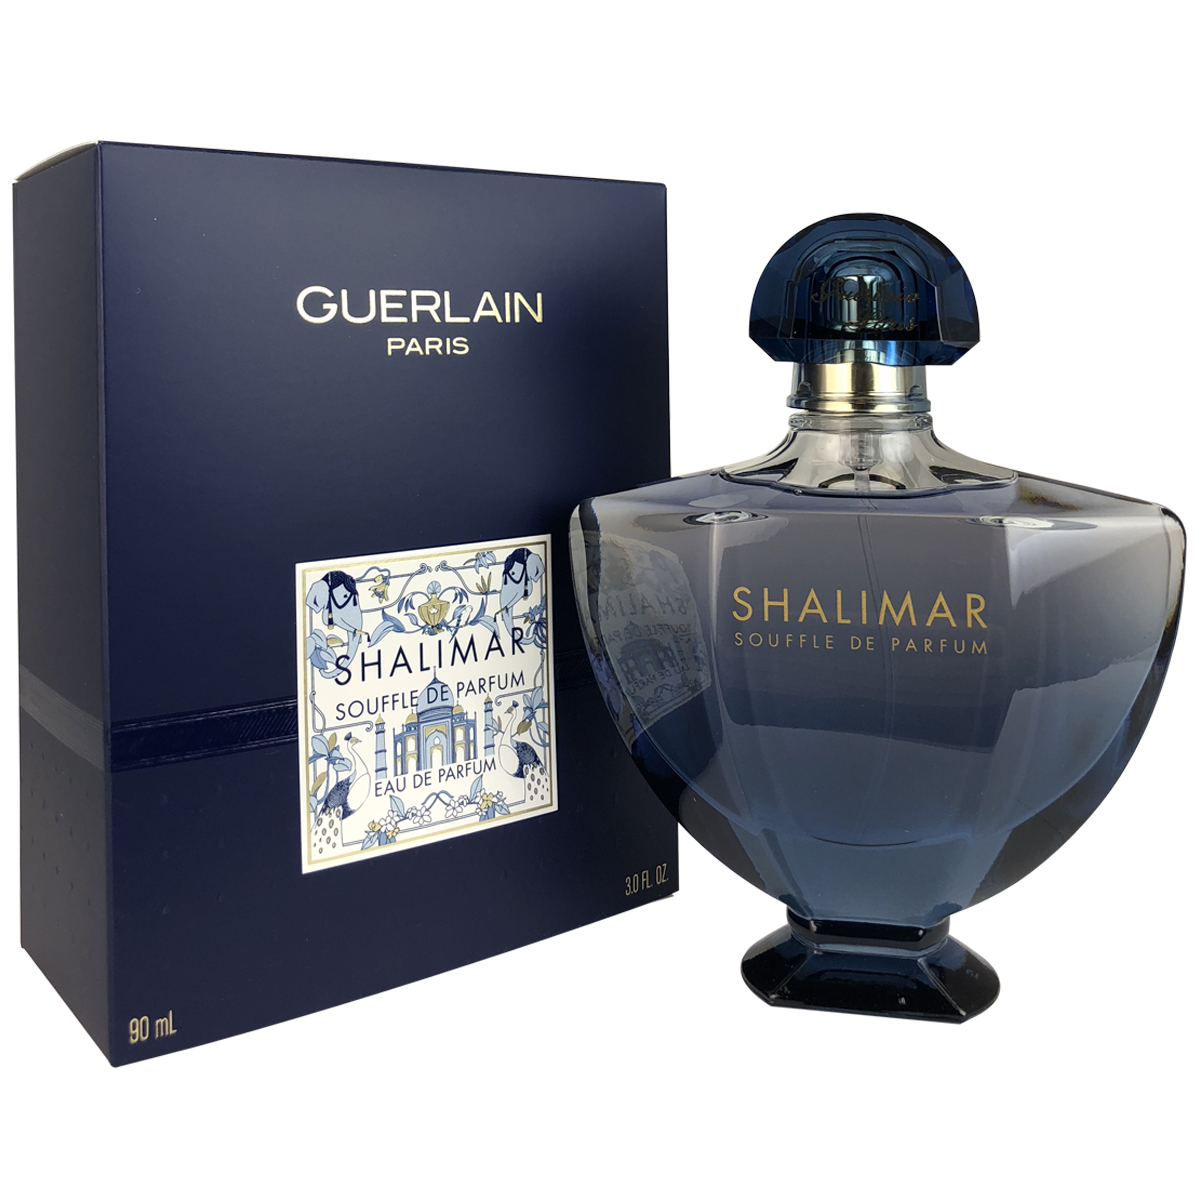 Guerlain Shalimar Souffle de Parfum L